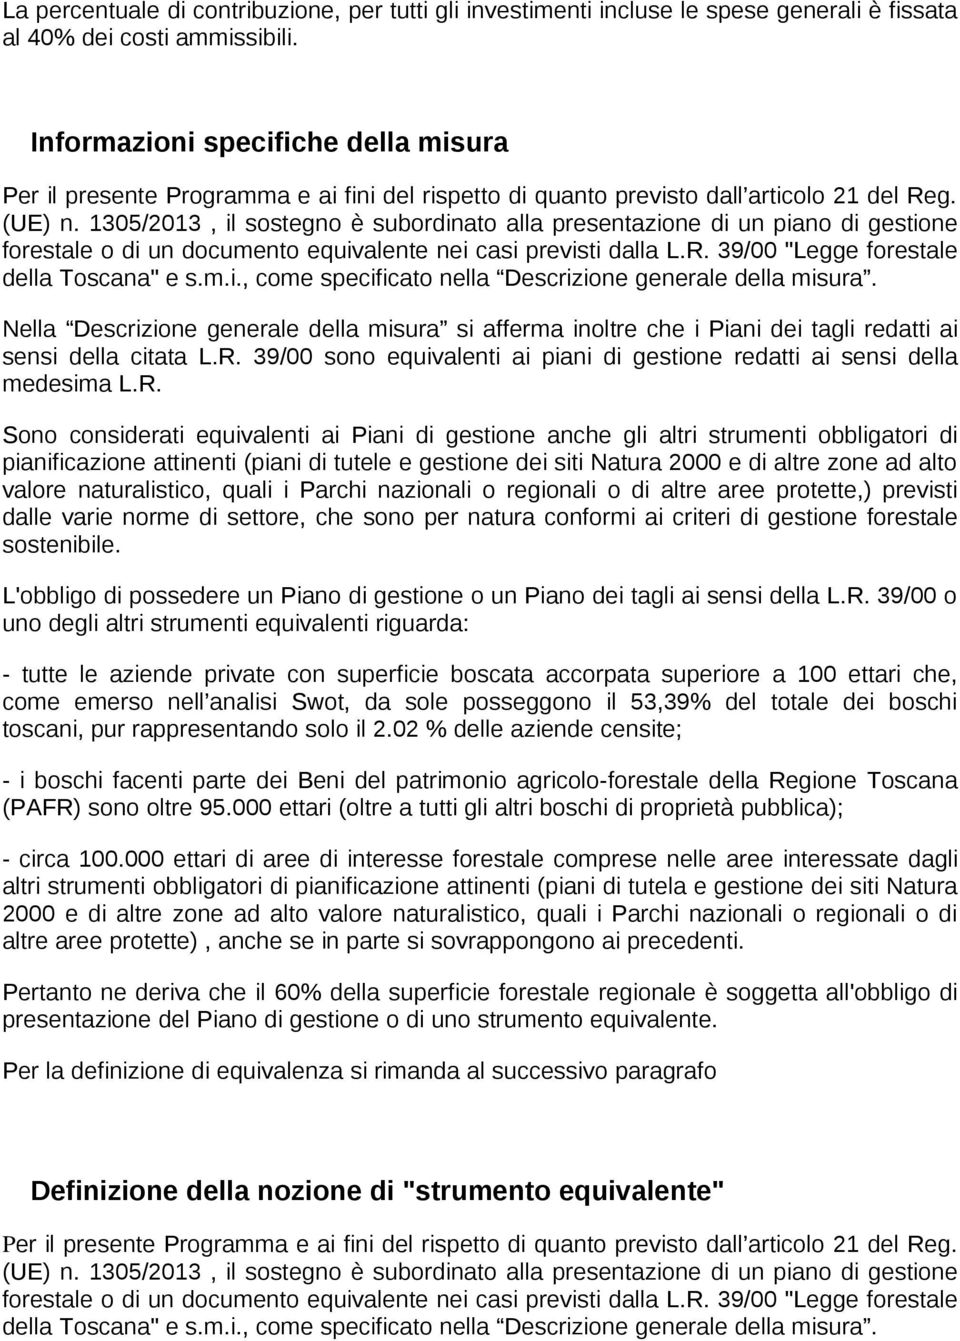 1305/2013, il sostegno è subordinato alla presentazione di un piano di gestione forestale o di un documento equivalente nei casi previsti dalla L.R. 39/00 "Legge forestale della Toscana" e s.m.i., come specificato nella Descrizione generale della misura.